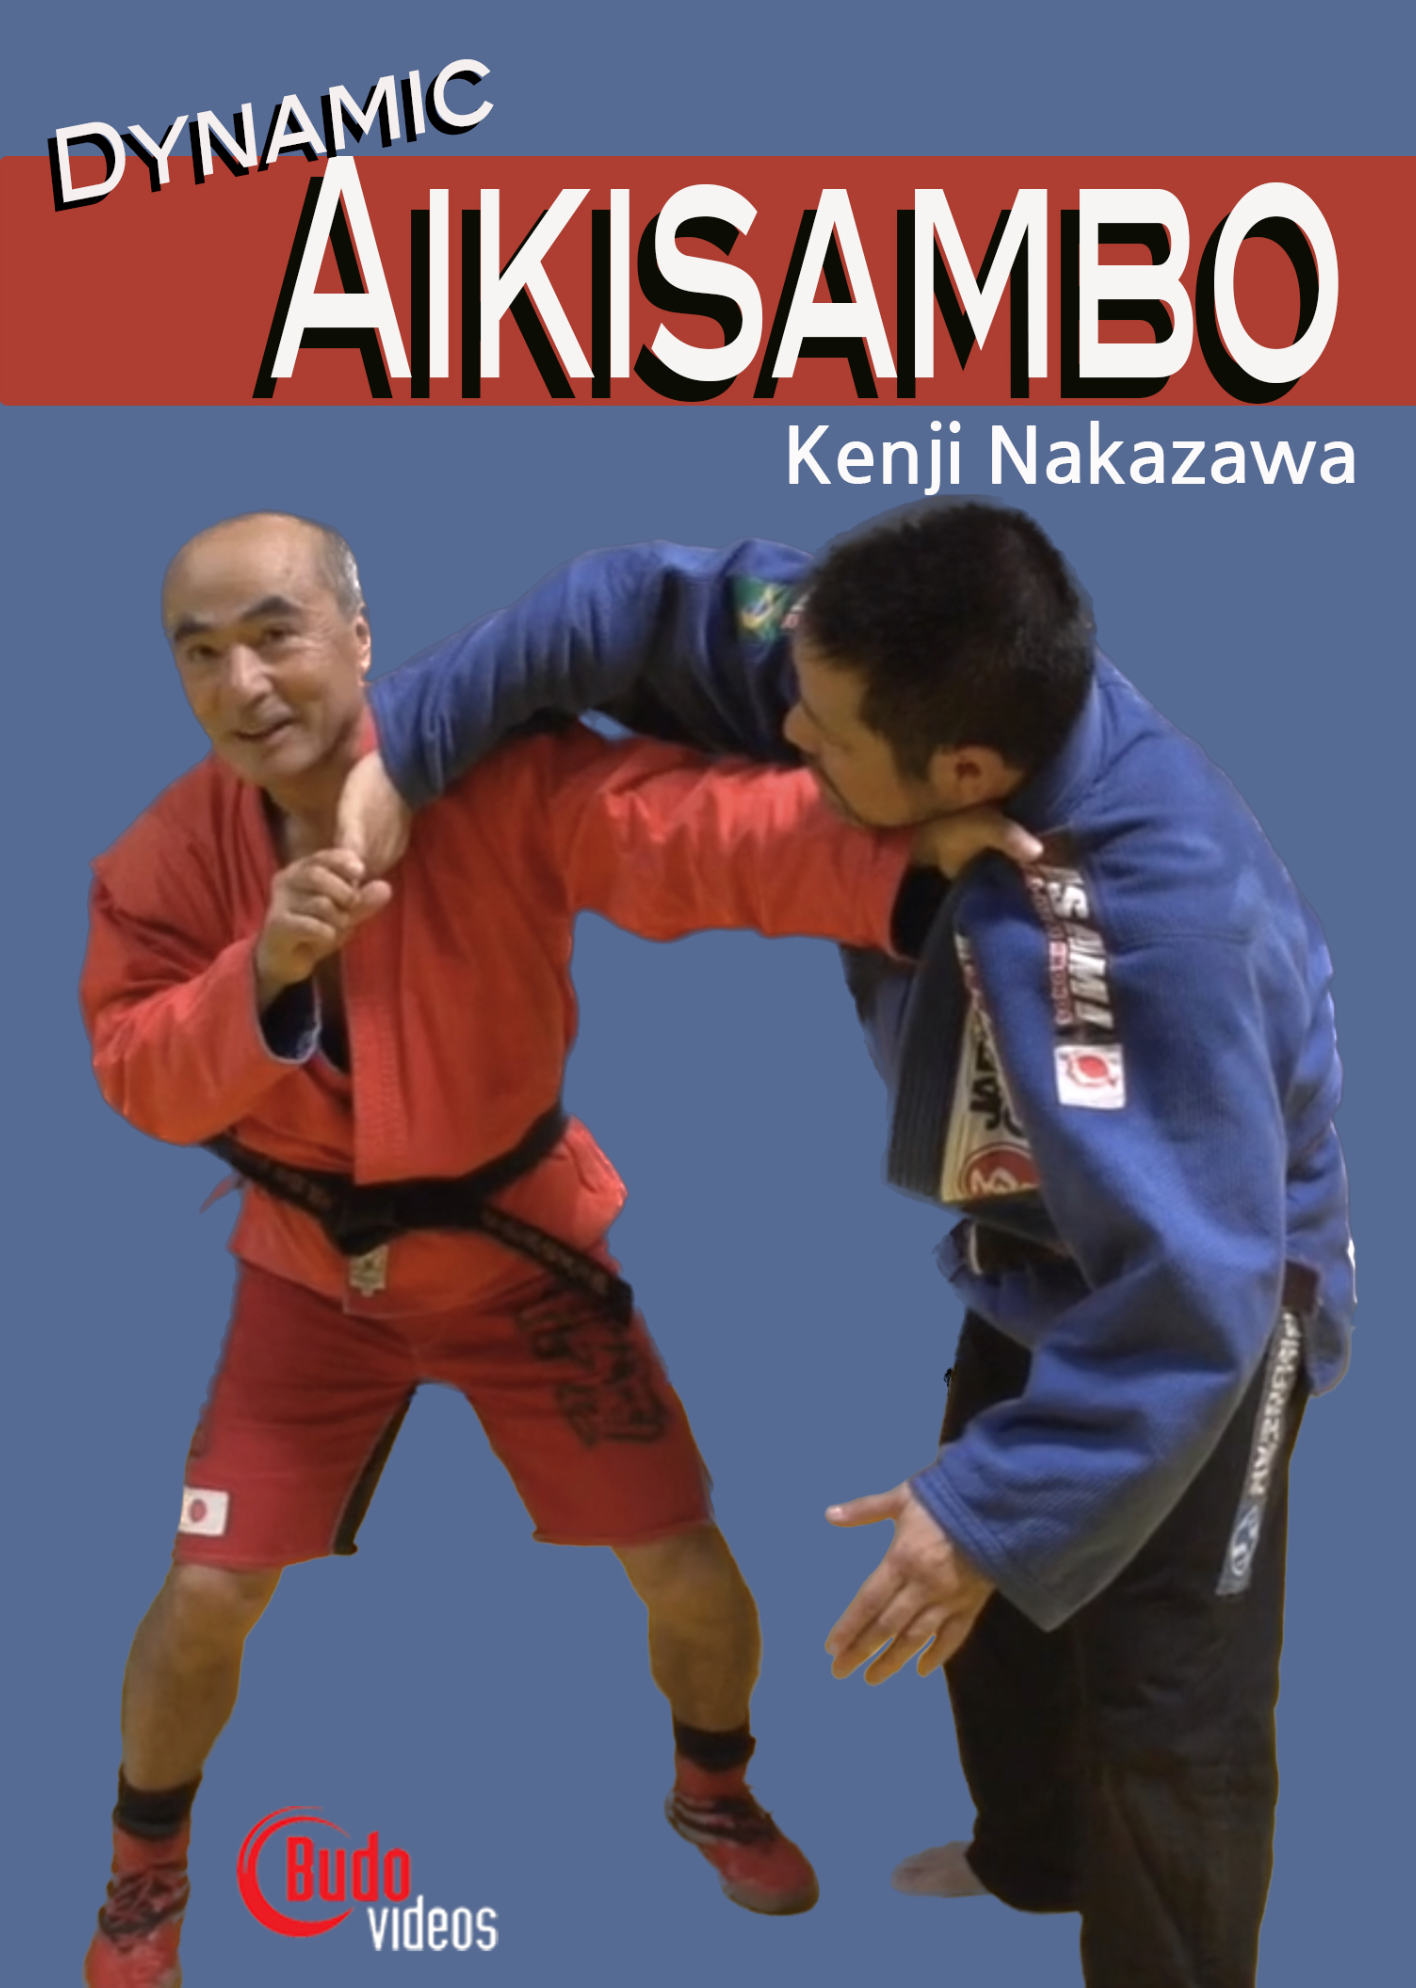 DVD dinámico de Aikisambo con Kenji Nakazawa